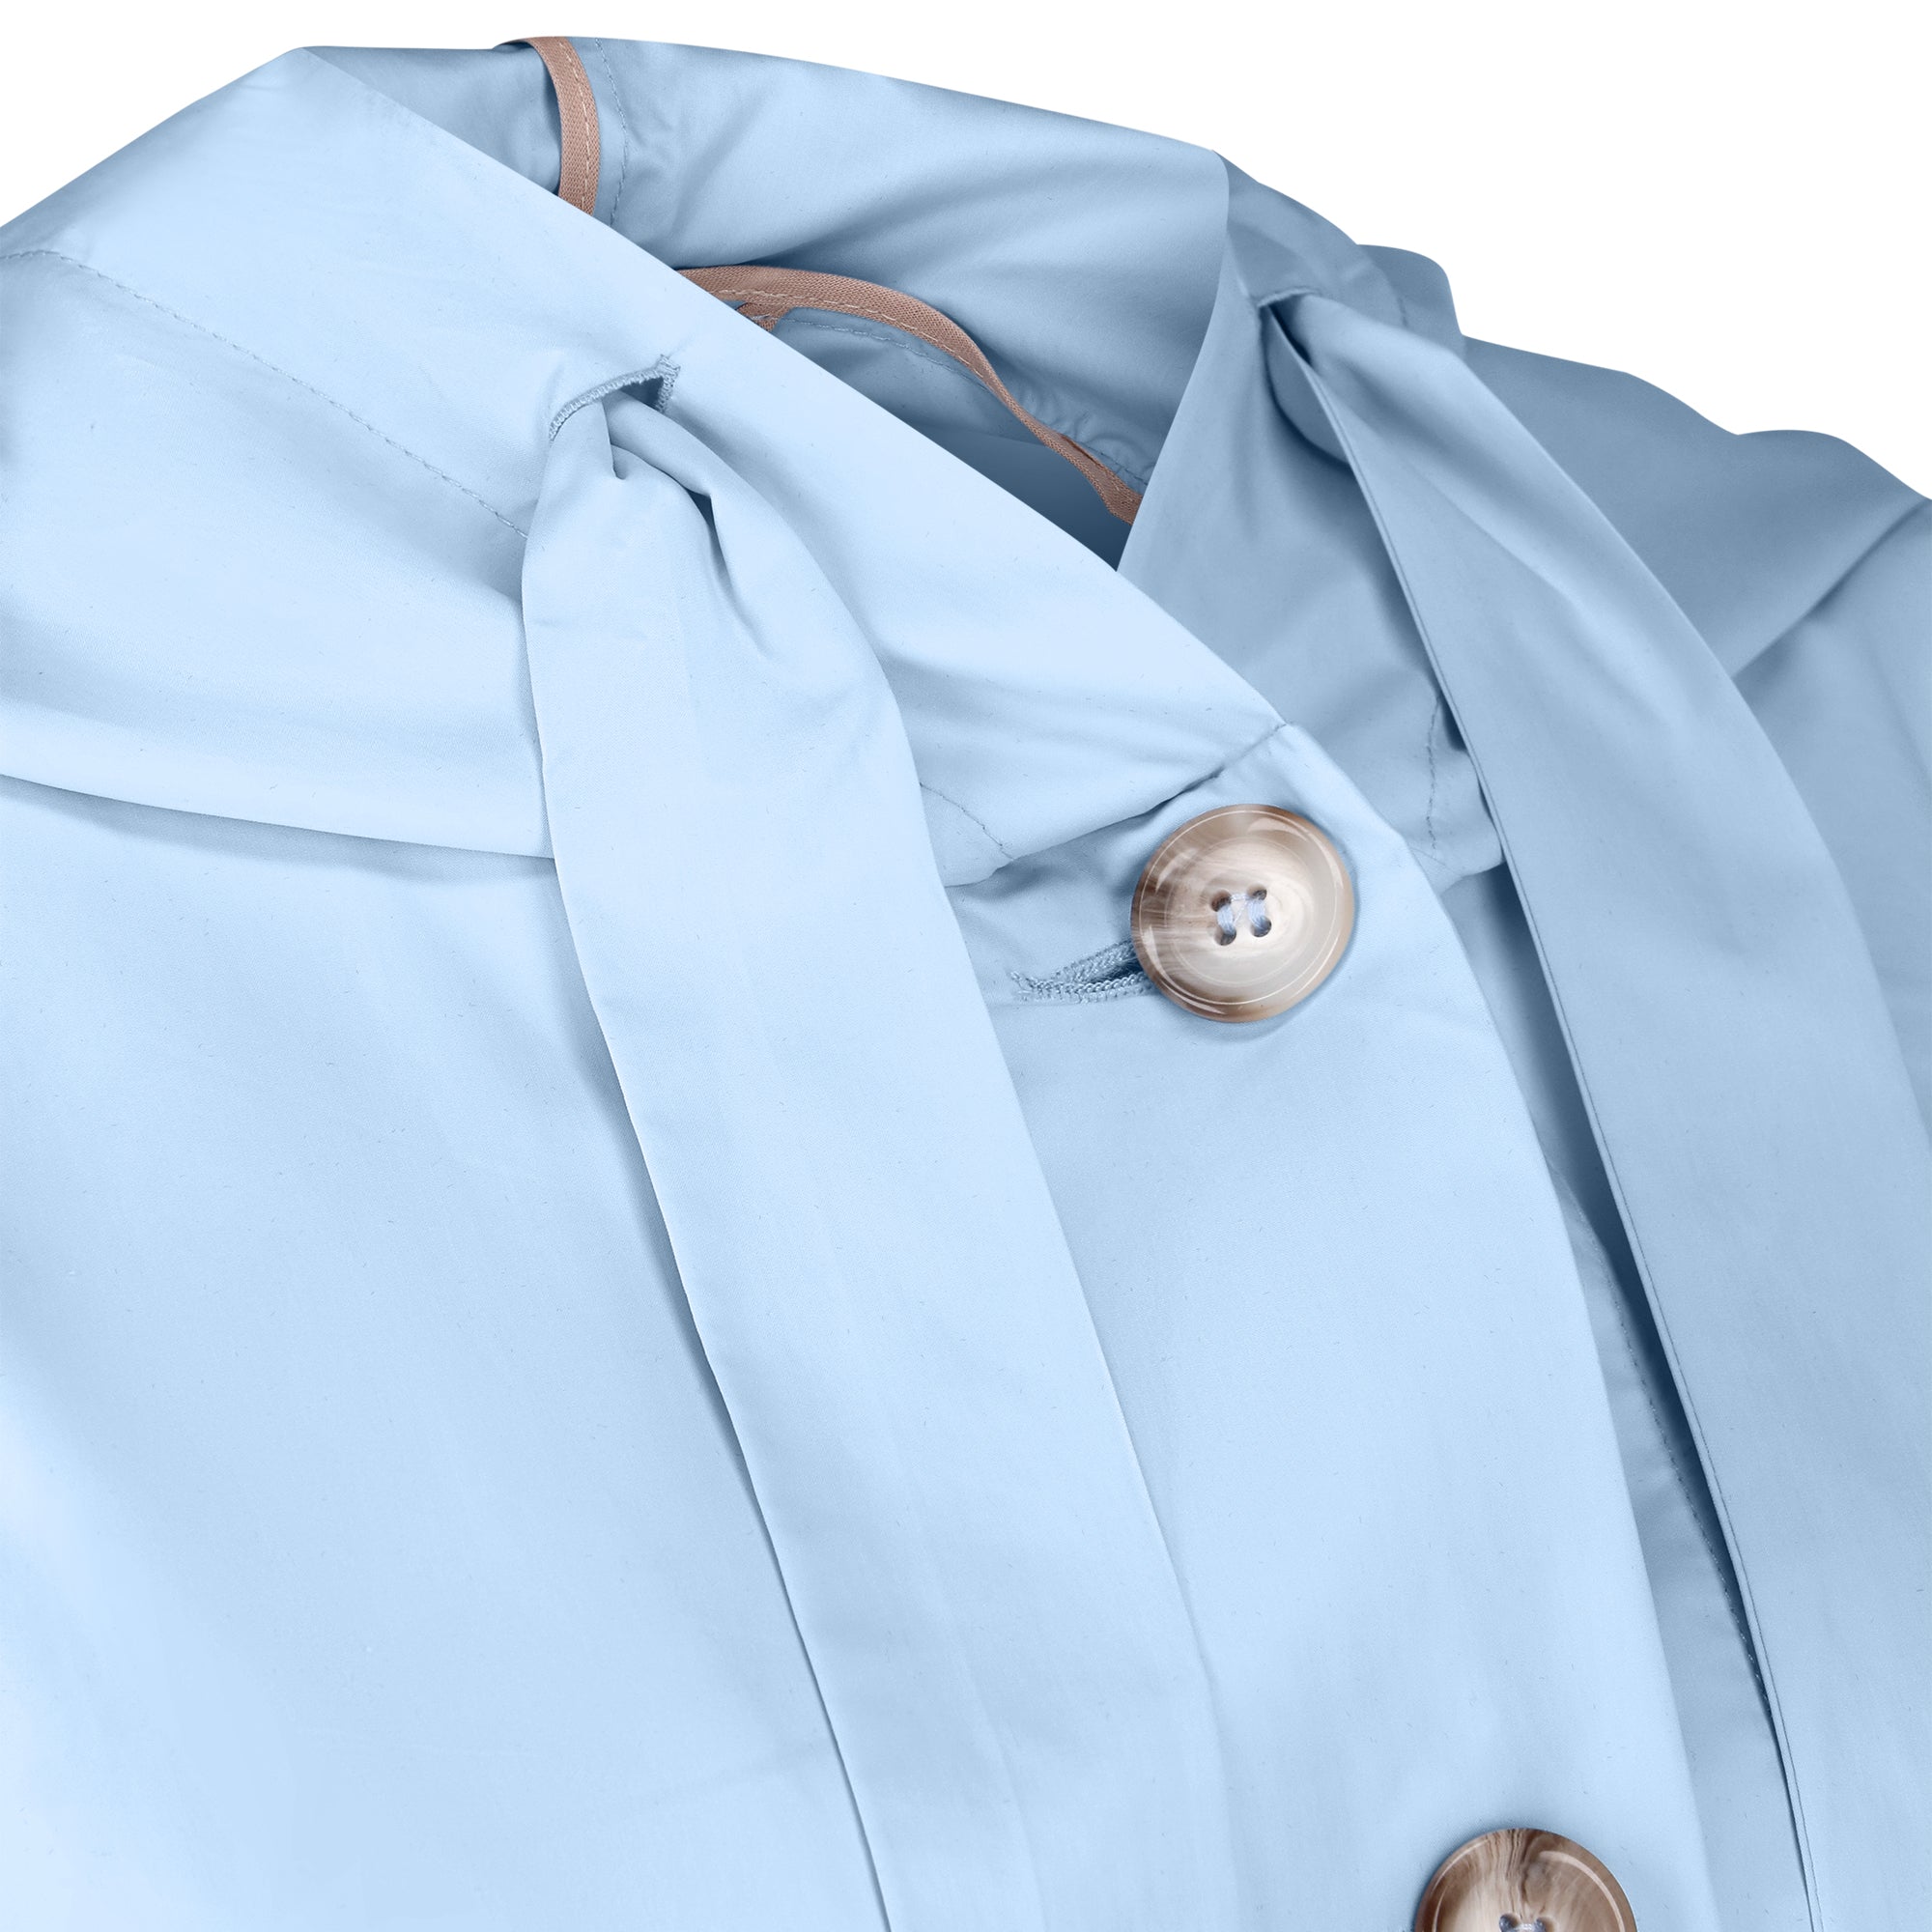 The Classic raincoat - azur blue - neckline detail